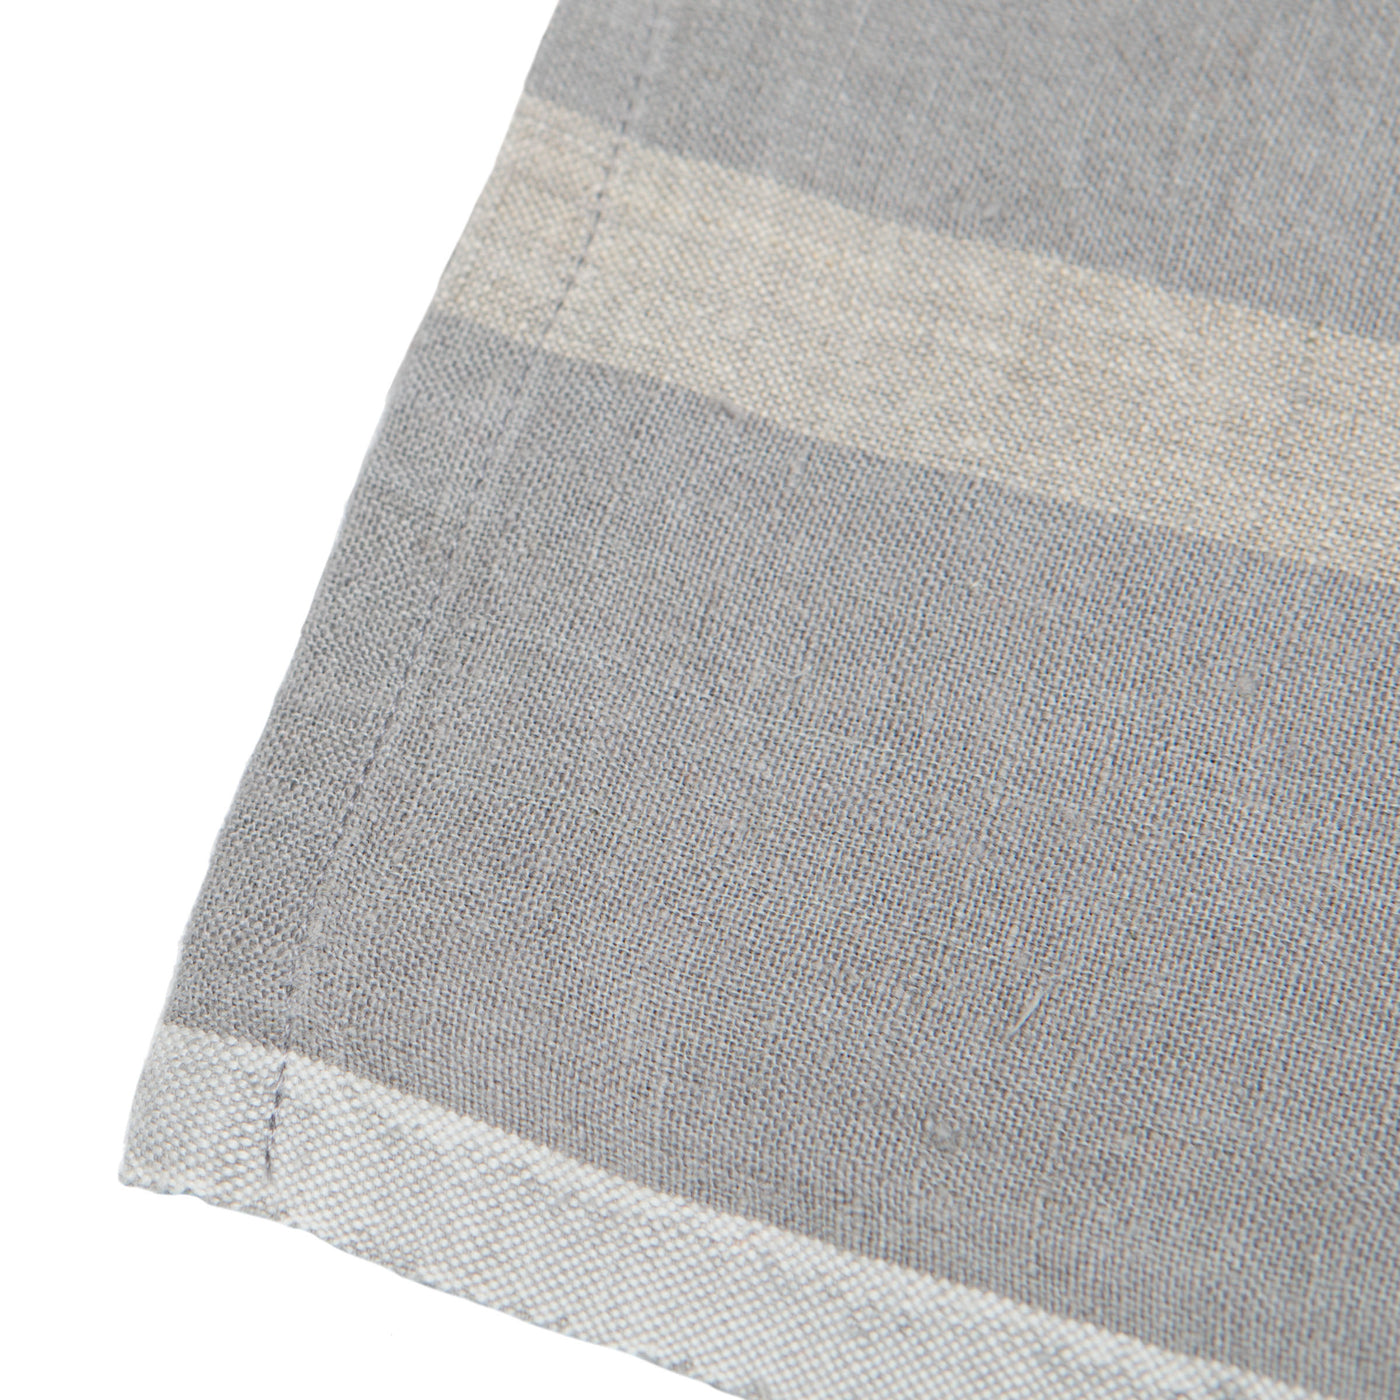 Laundered Linen Napkins Grey & Natural, Set of 4